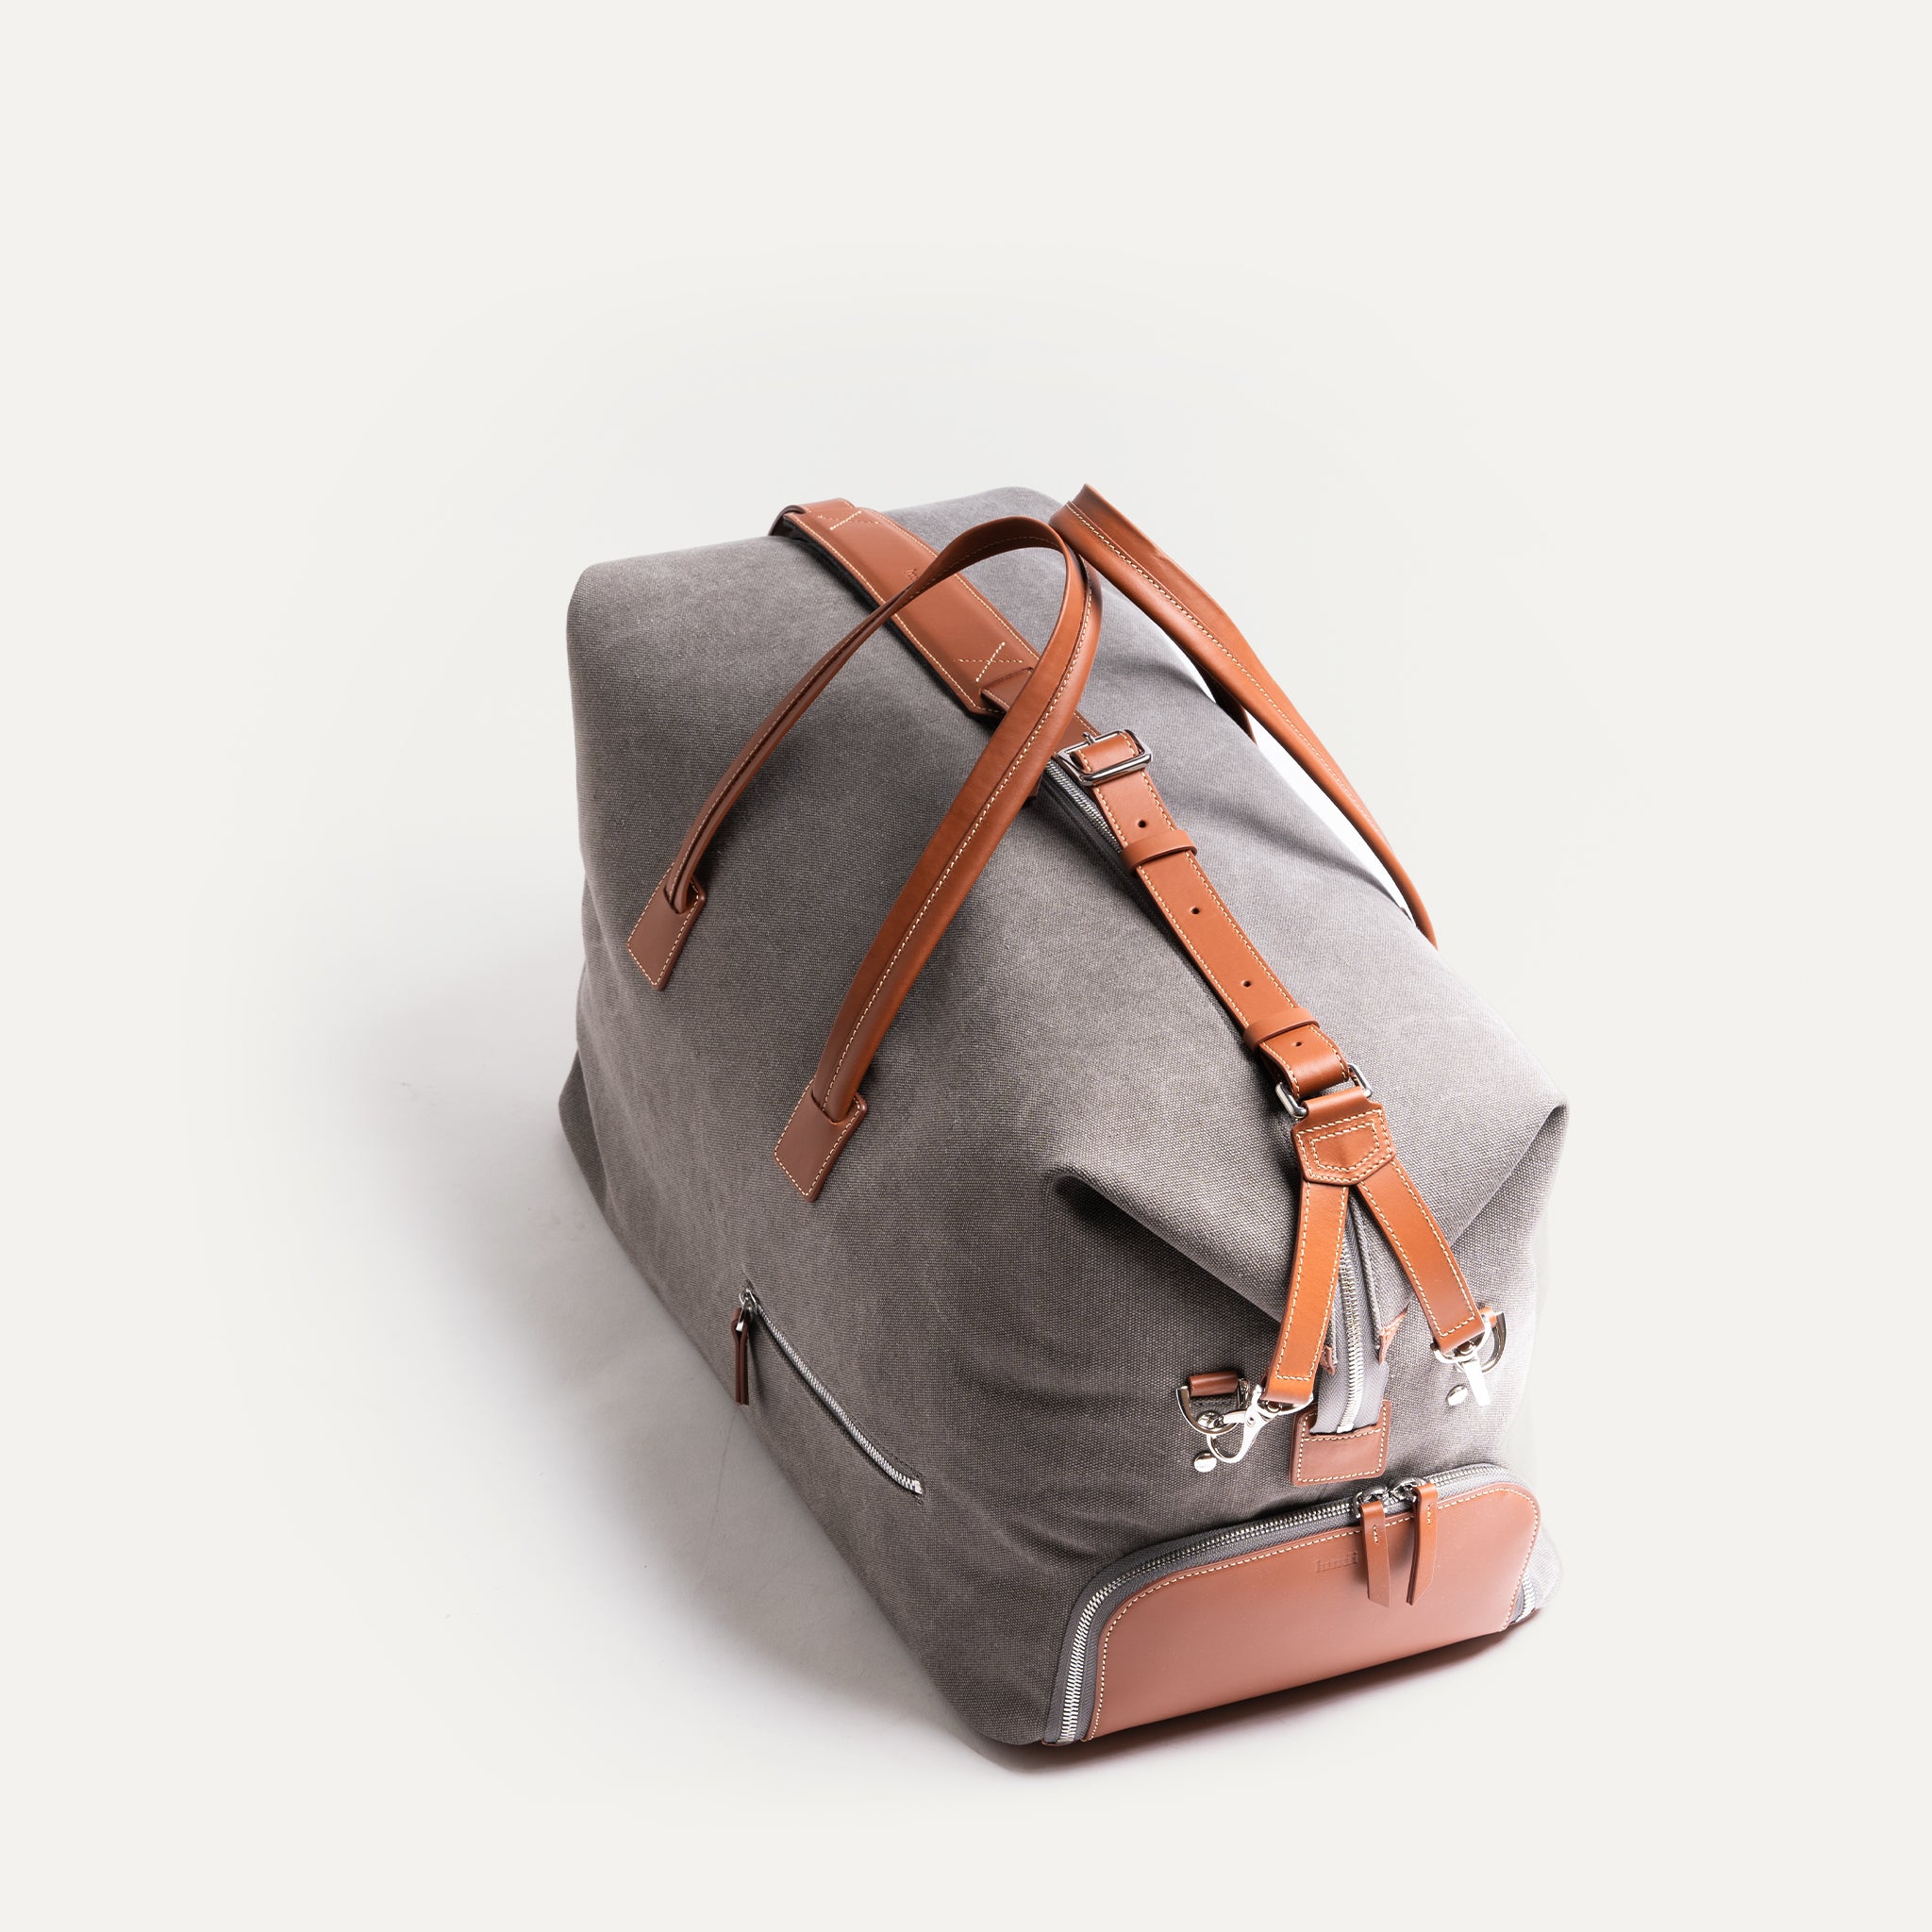 Un format très compact pour notre sac de voyage Remington lundi : des lignes épurées pour un design minimaliste.